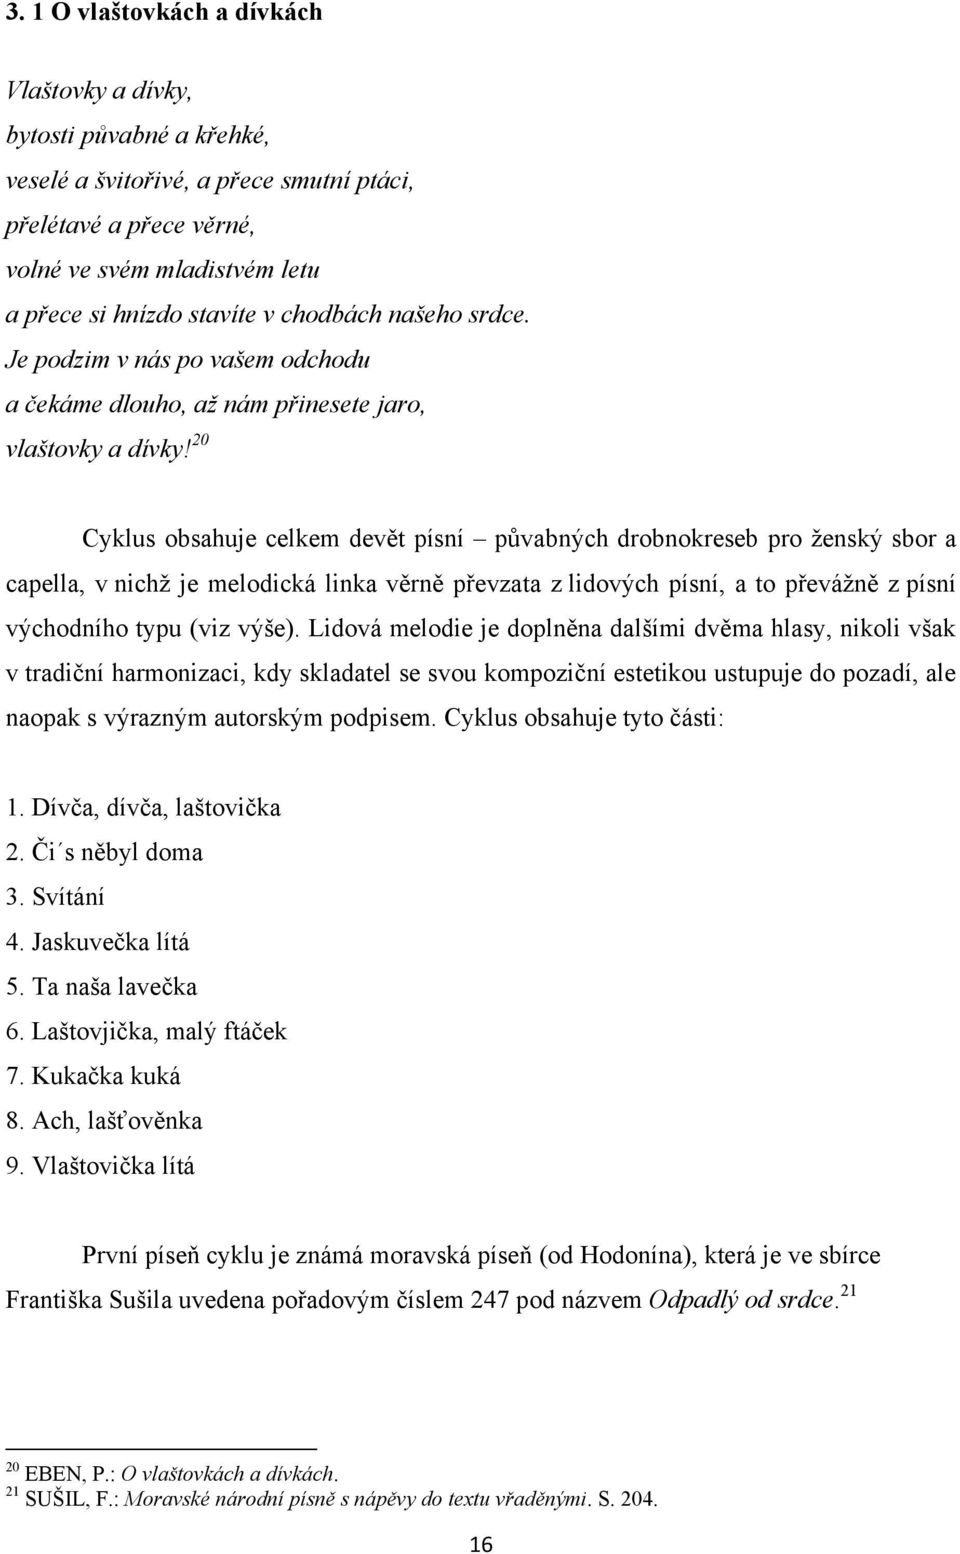 20 Cyklus obsahuje celkem devět písní půvabných drobnokreseb pro ţenský sbor a capella, v nichţ je melodická linka věrně převzata z lidových písní, a to převáţně z písní východního typu (viz výše).